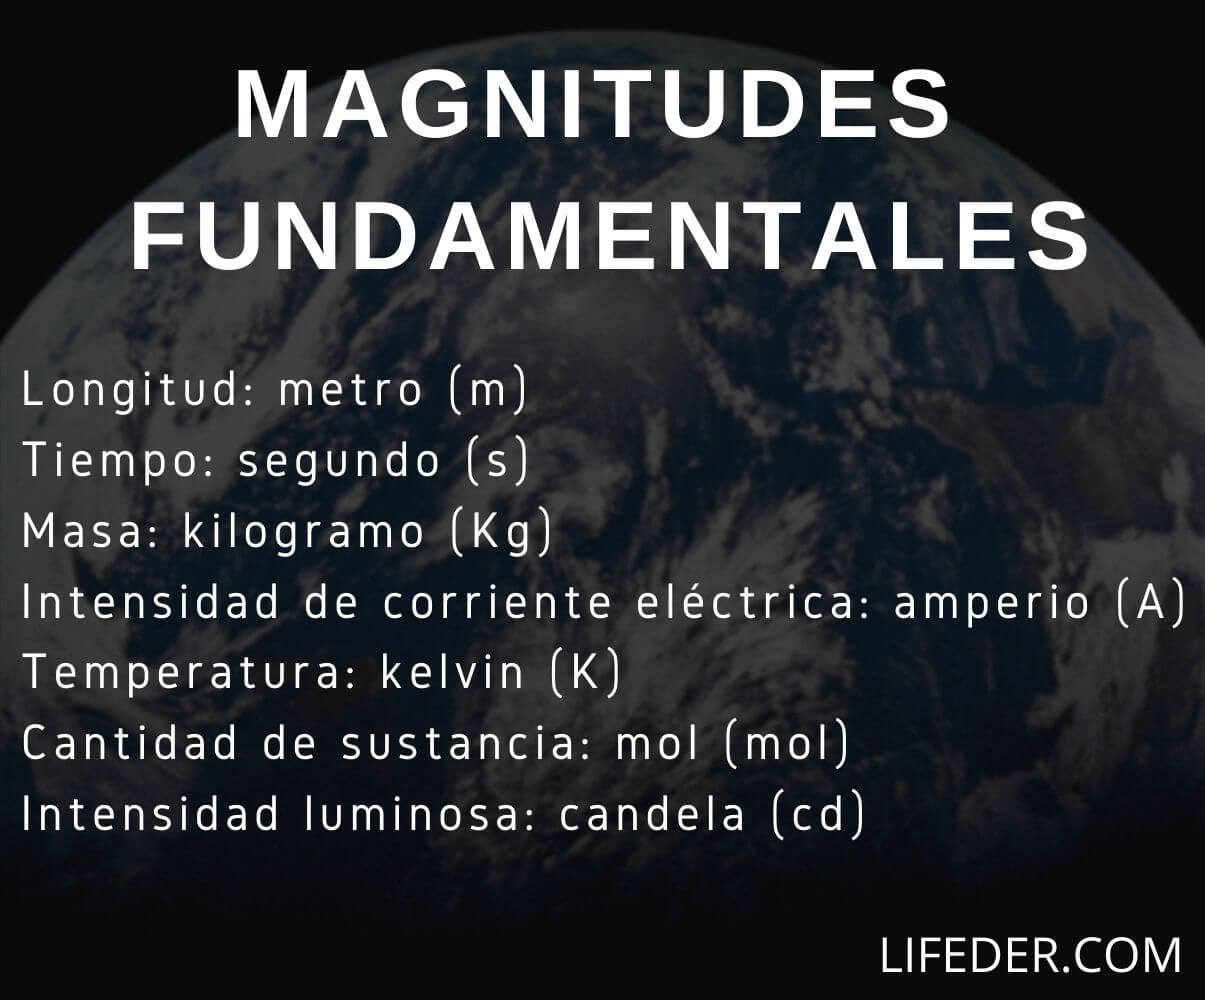 Cuáles son las magnitudes fundamentales?